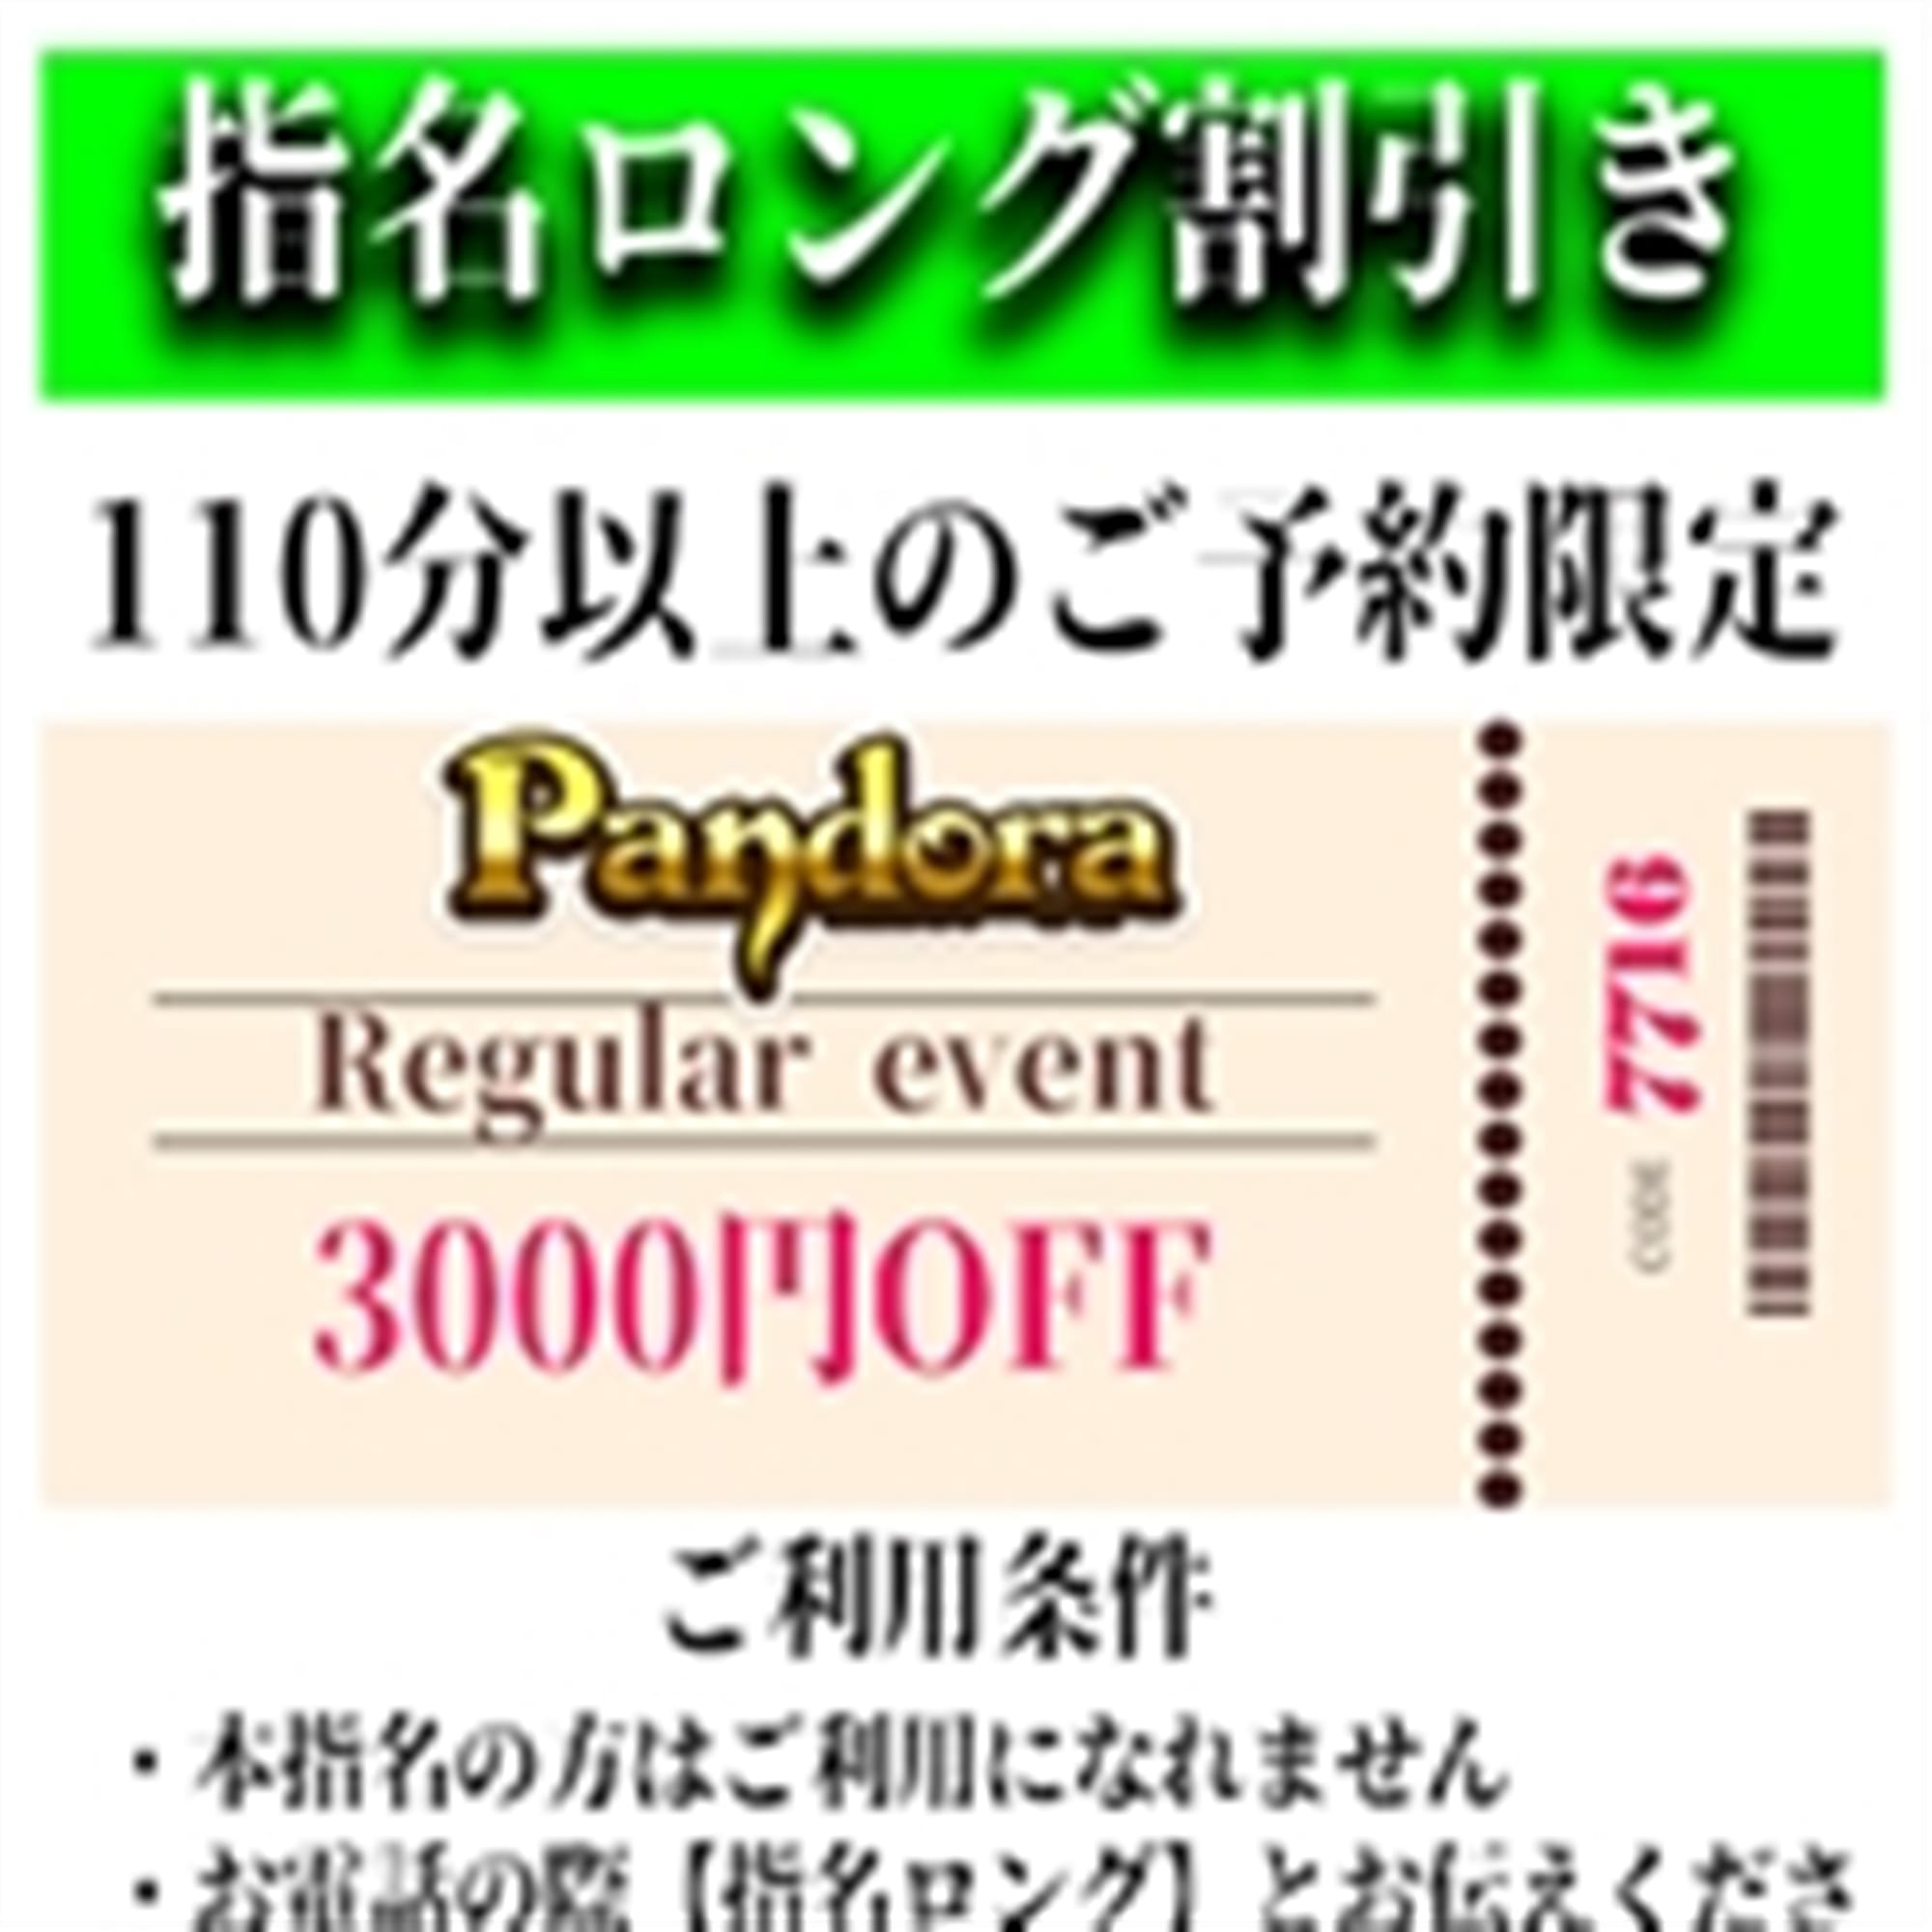 「ご指名のお客様も遊べるロングコース割引」04/25(木) 05:31 | Pandora(パンドラ)新潟のお得なニュース